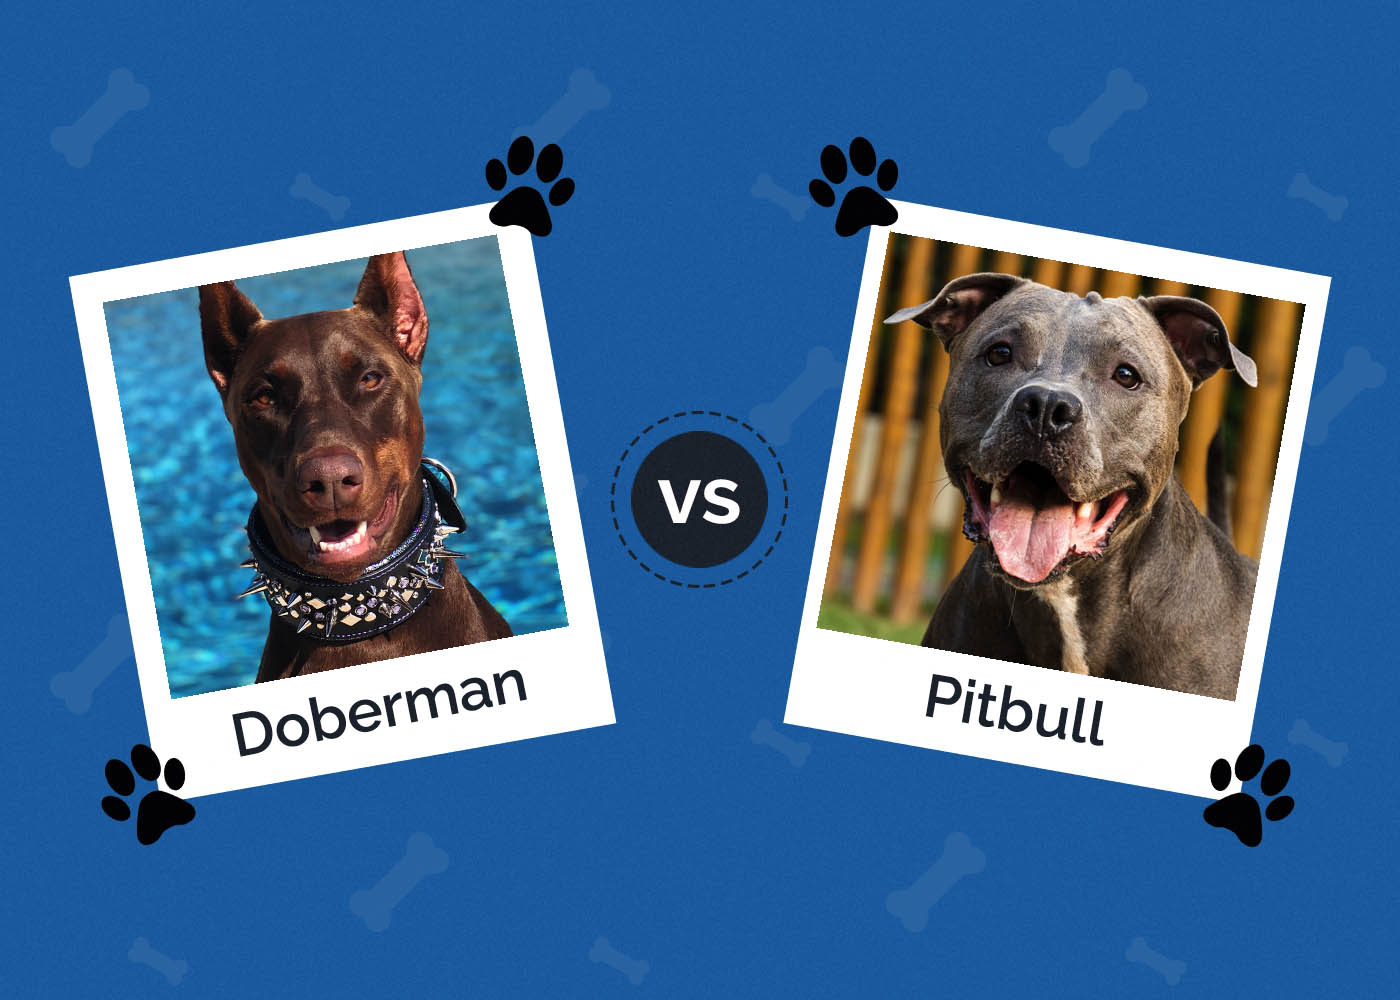 Doberman vs Pitbull